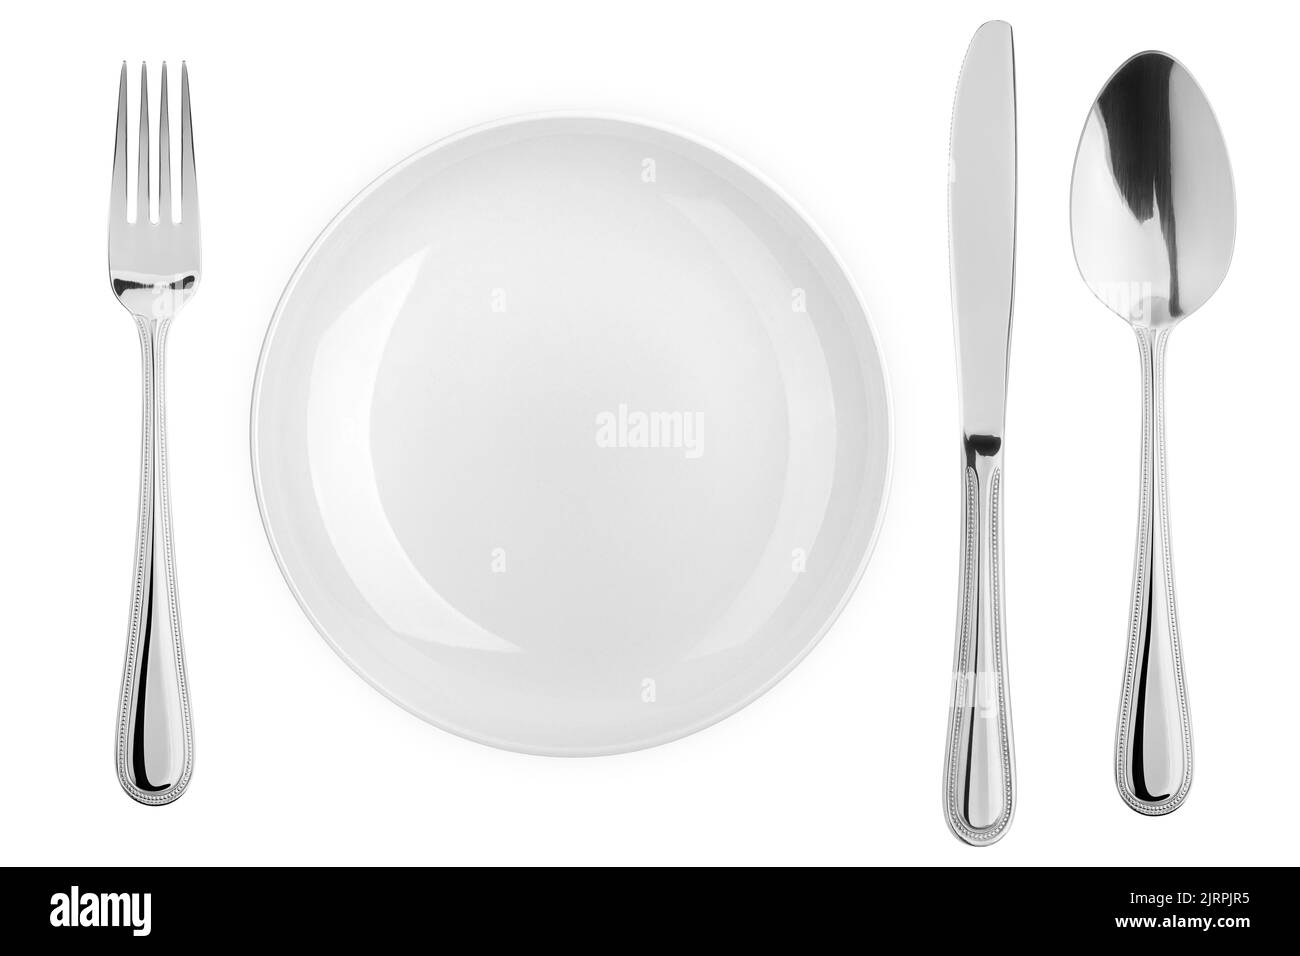 Piatto vuoto, forchetta, coltello, cucchiaio, posate isolate su sfondo bianco, percorso di ritaglio, vista dall'alto Foto Stock